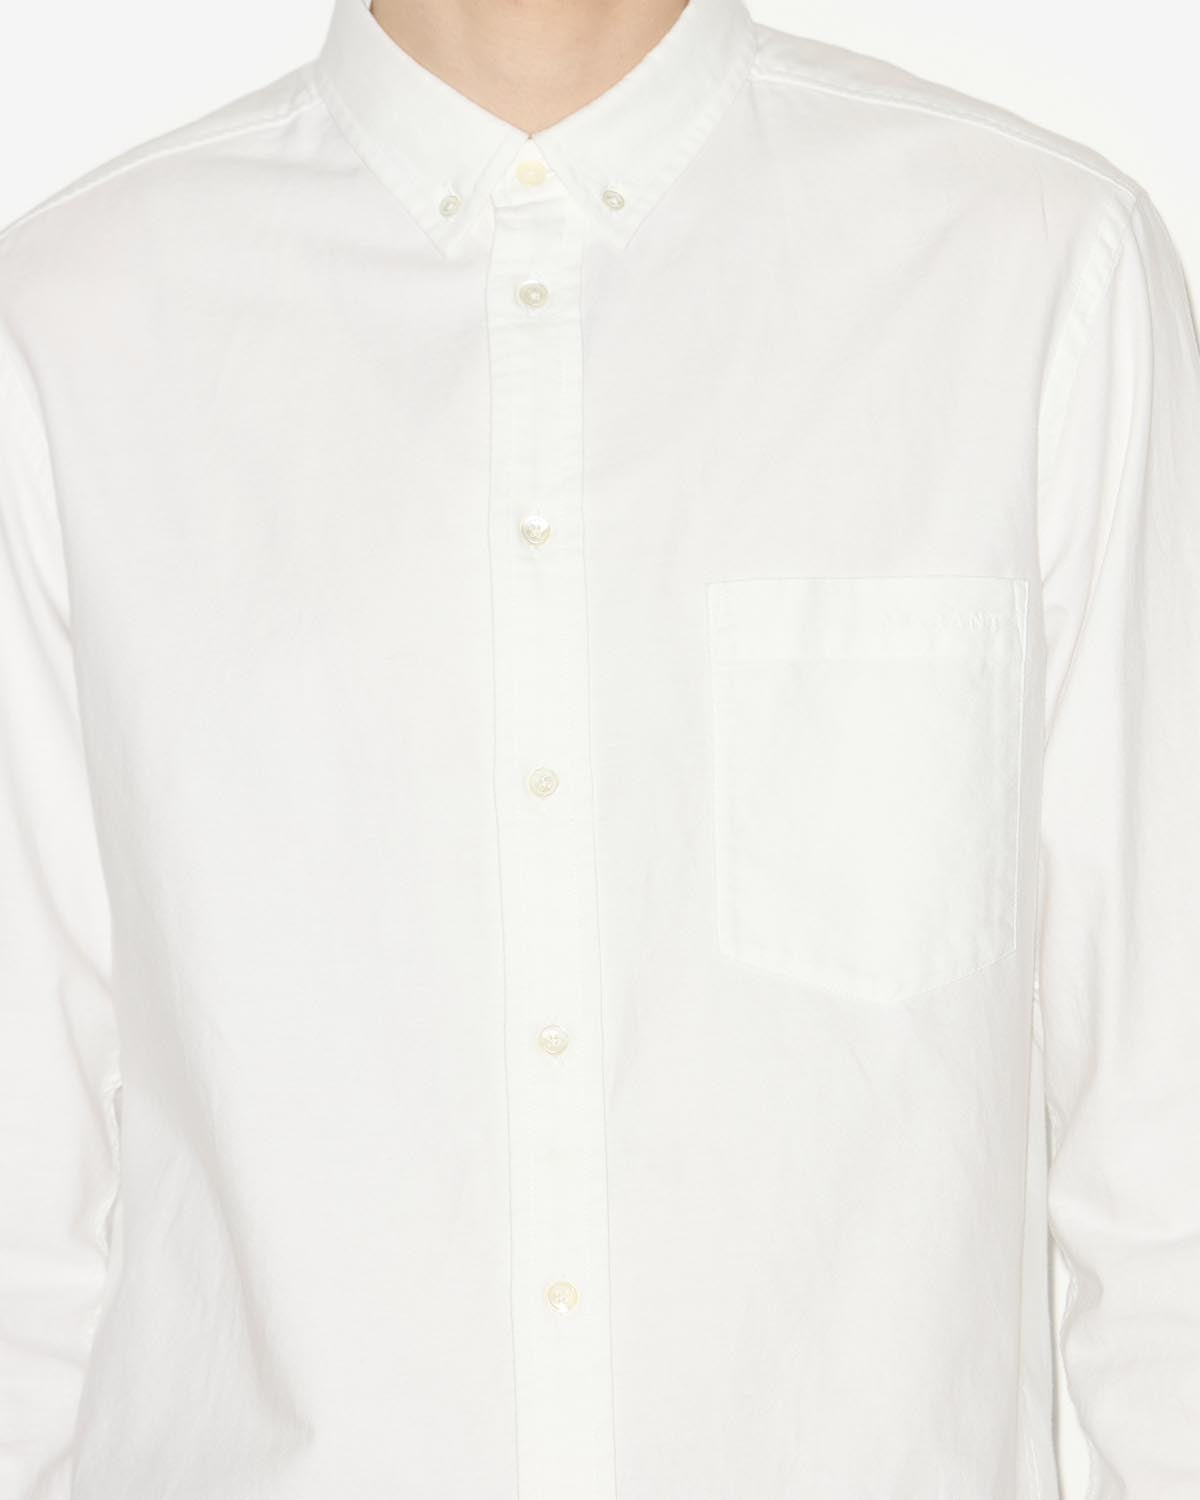 Jasolo camicia Man Bianco 2